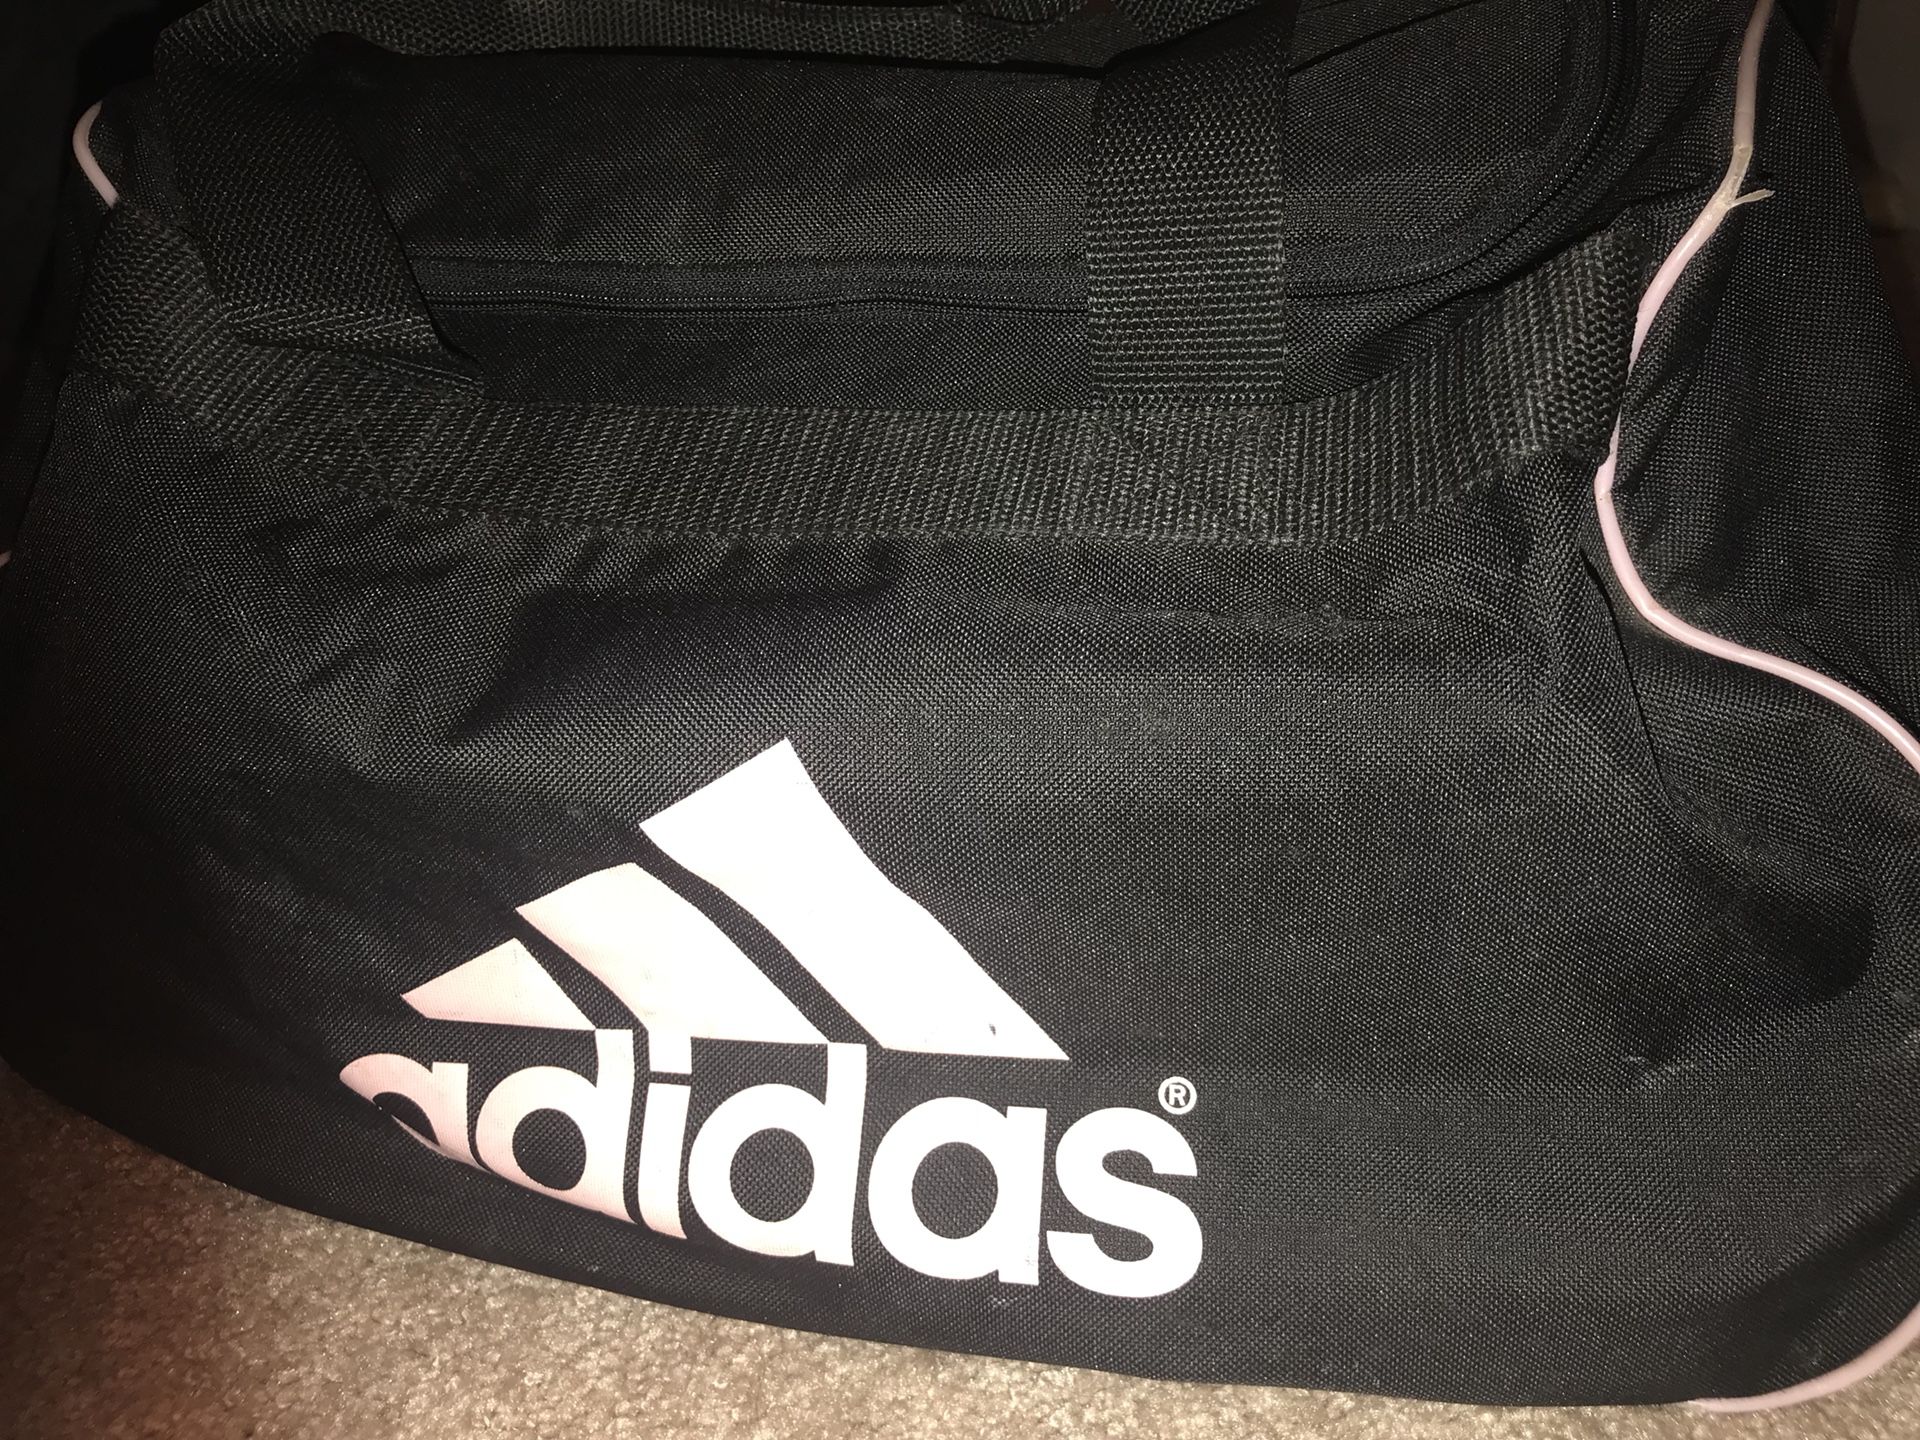 Adidas athletic bag